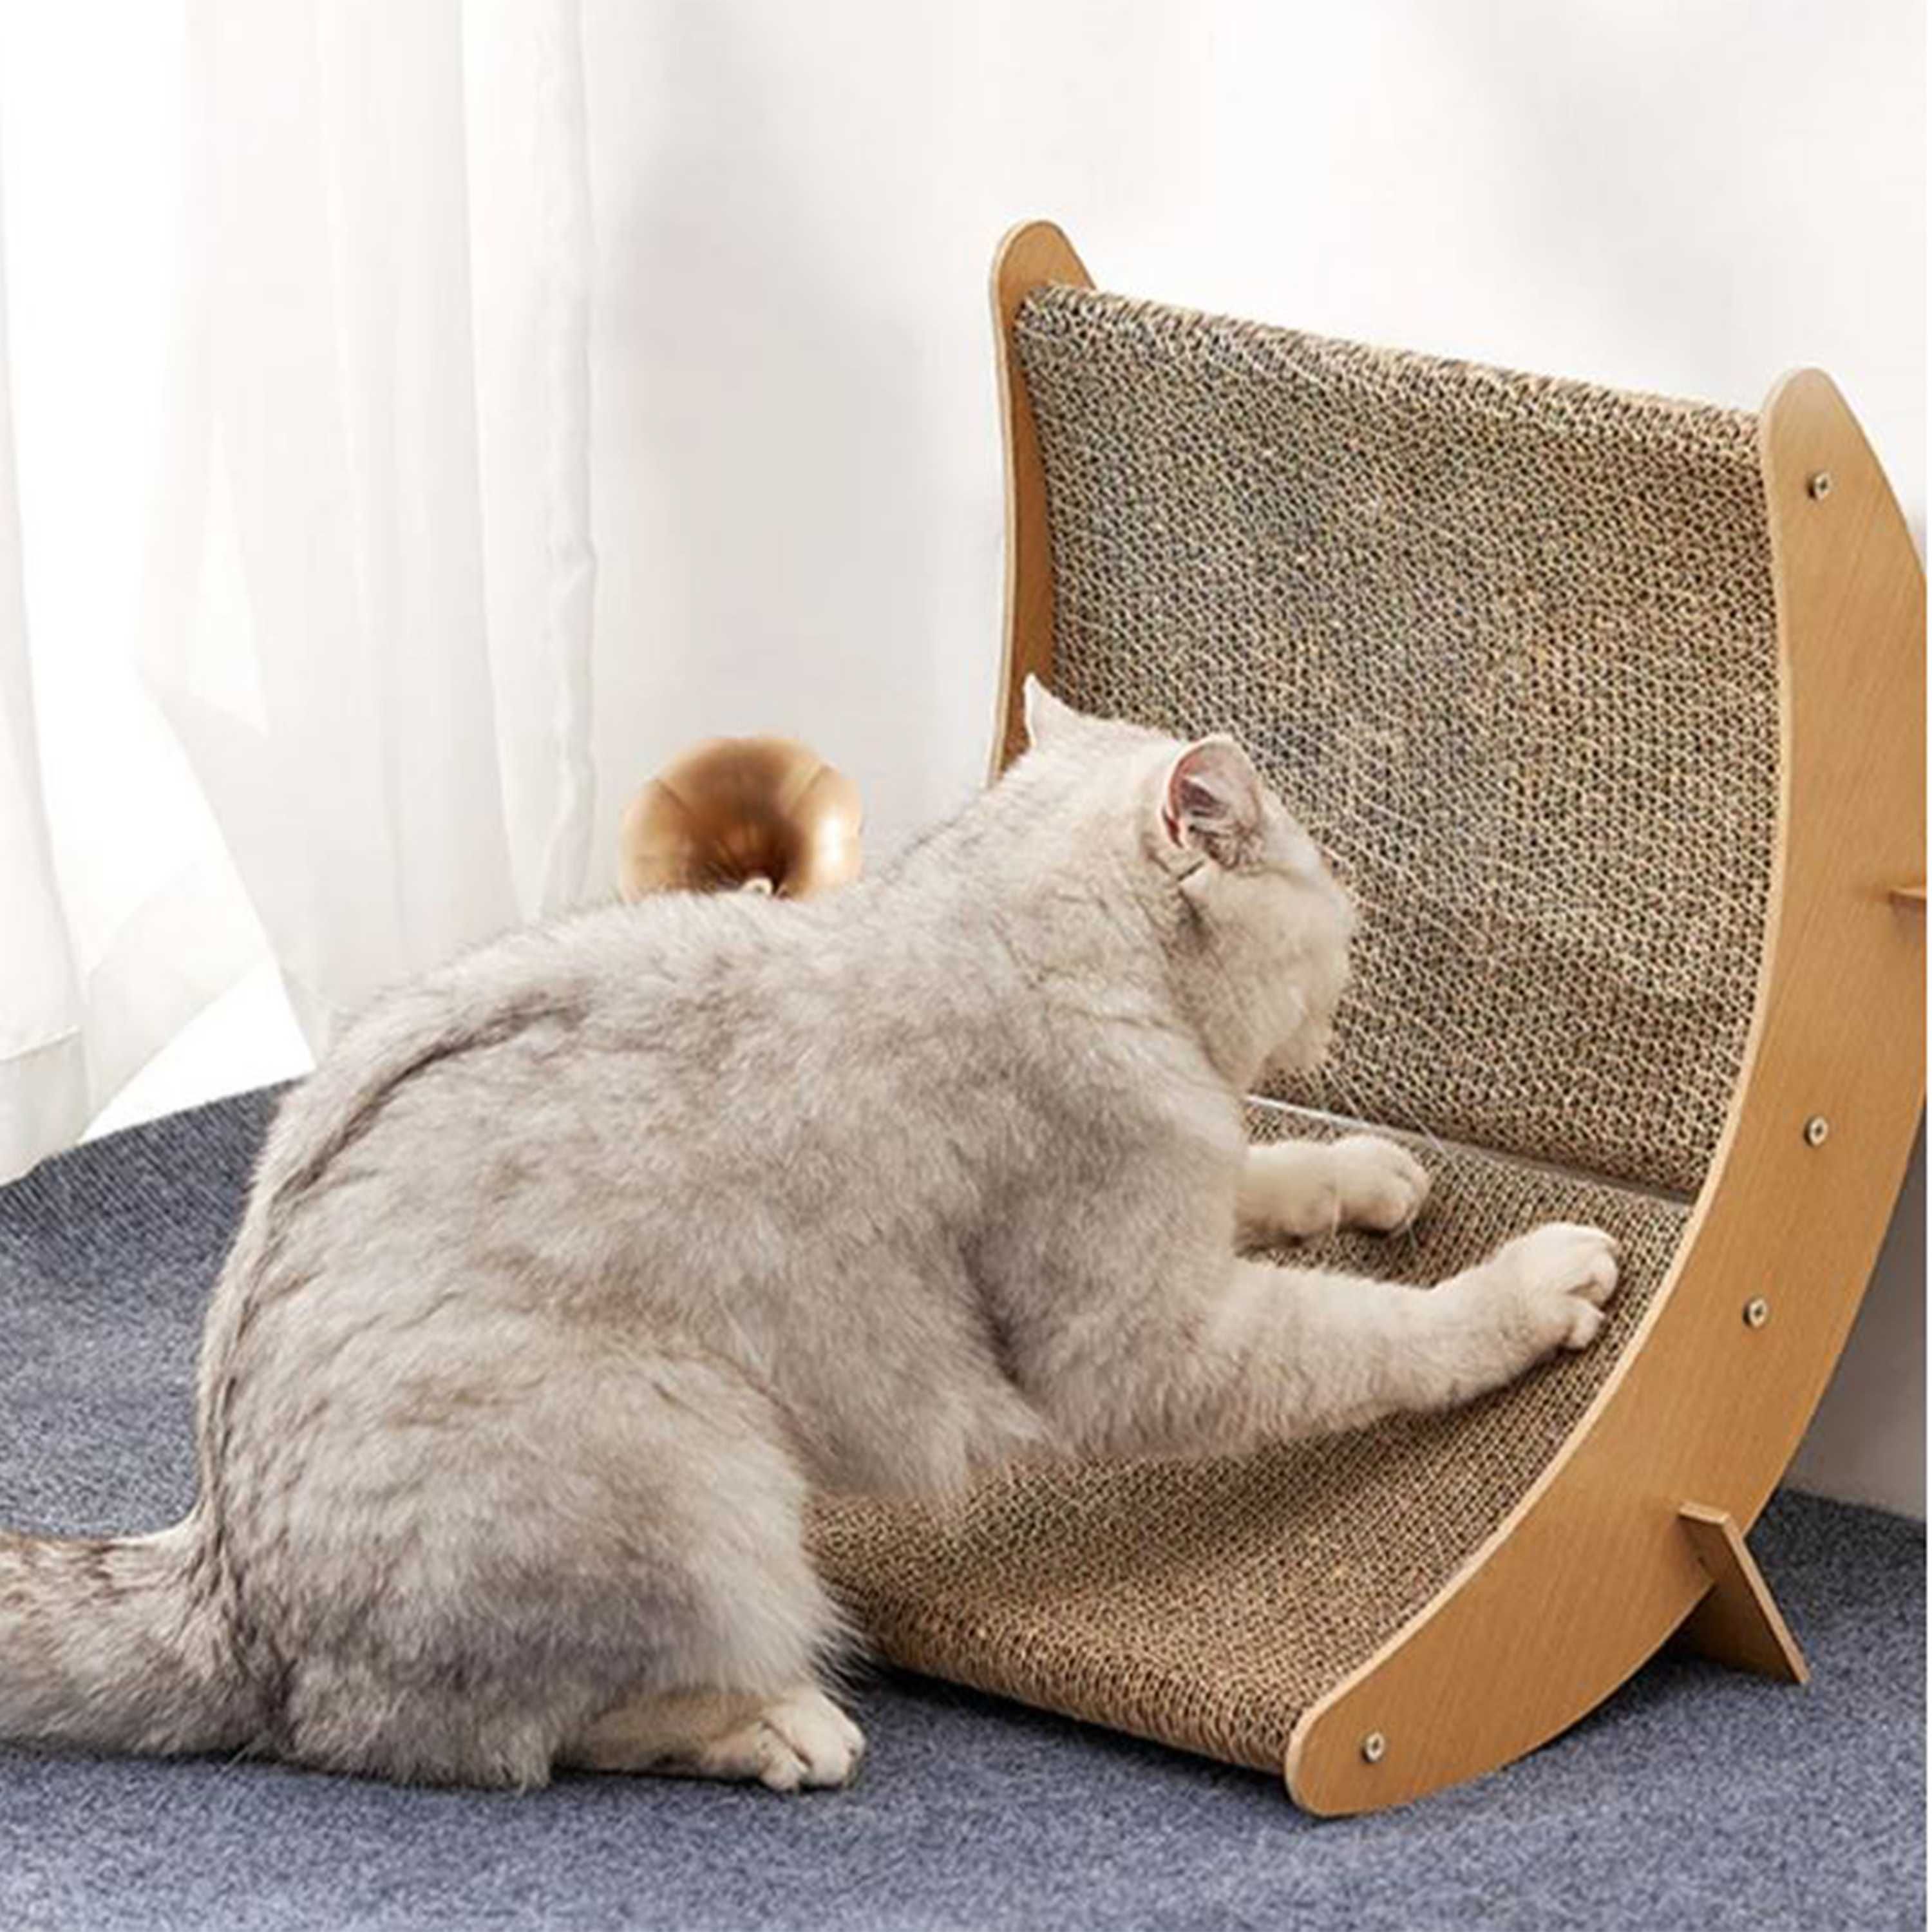 Carton de zgariat pentru pisici cu suport din lemn